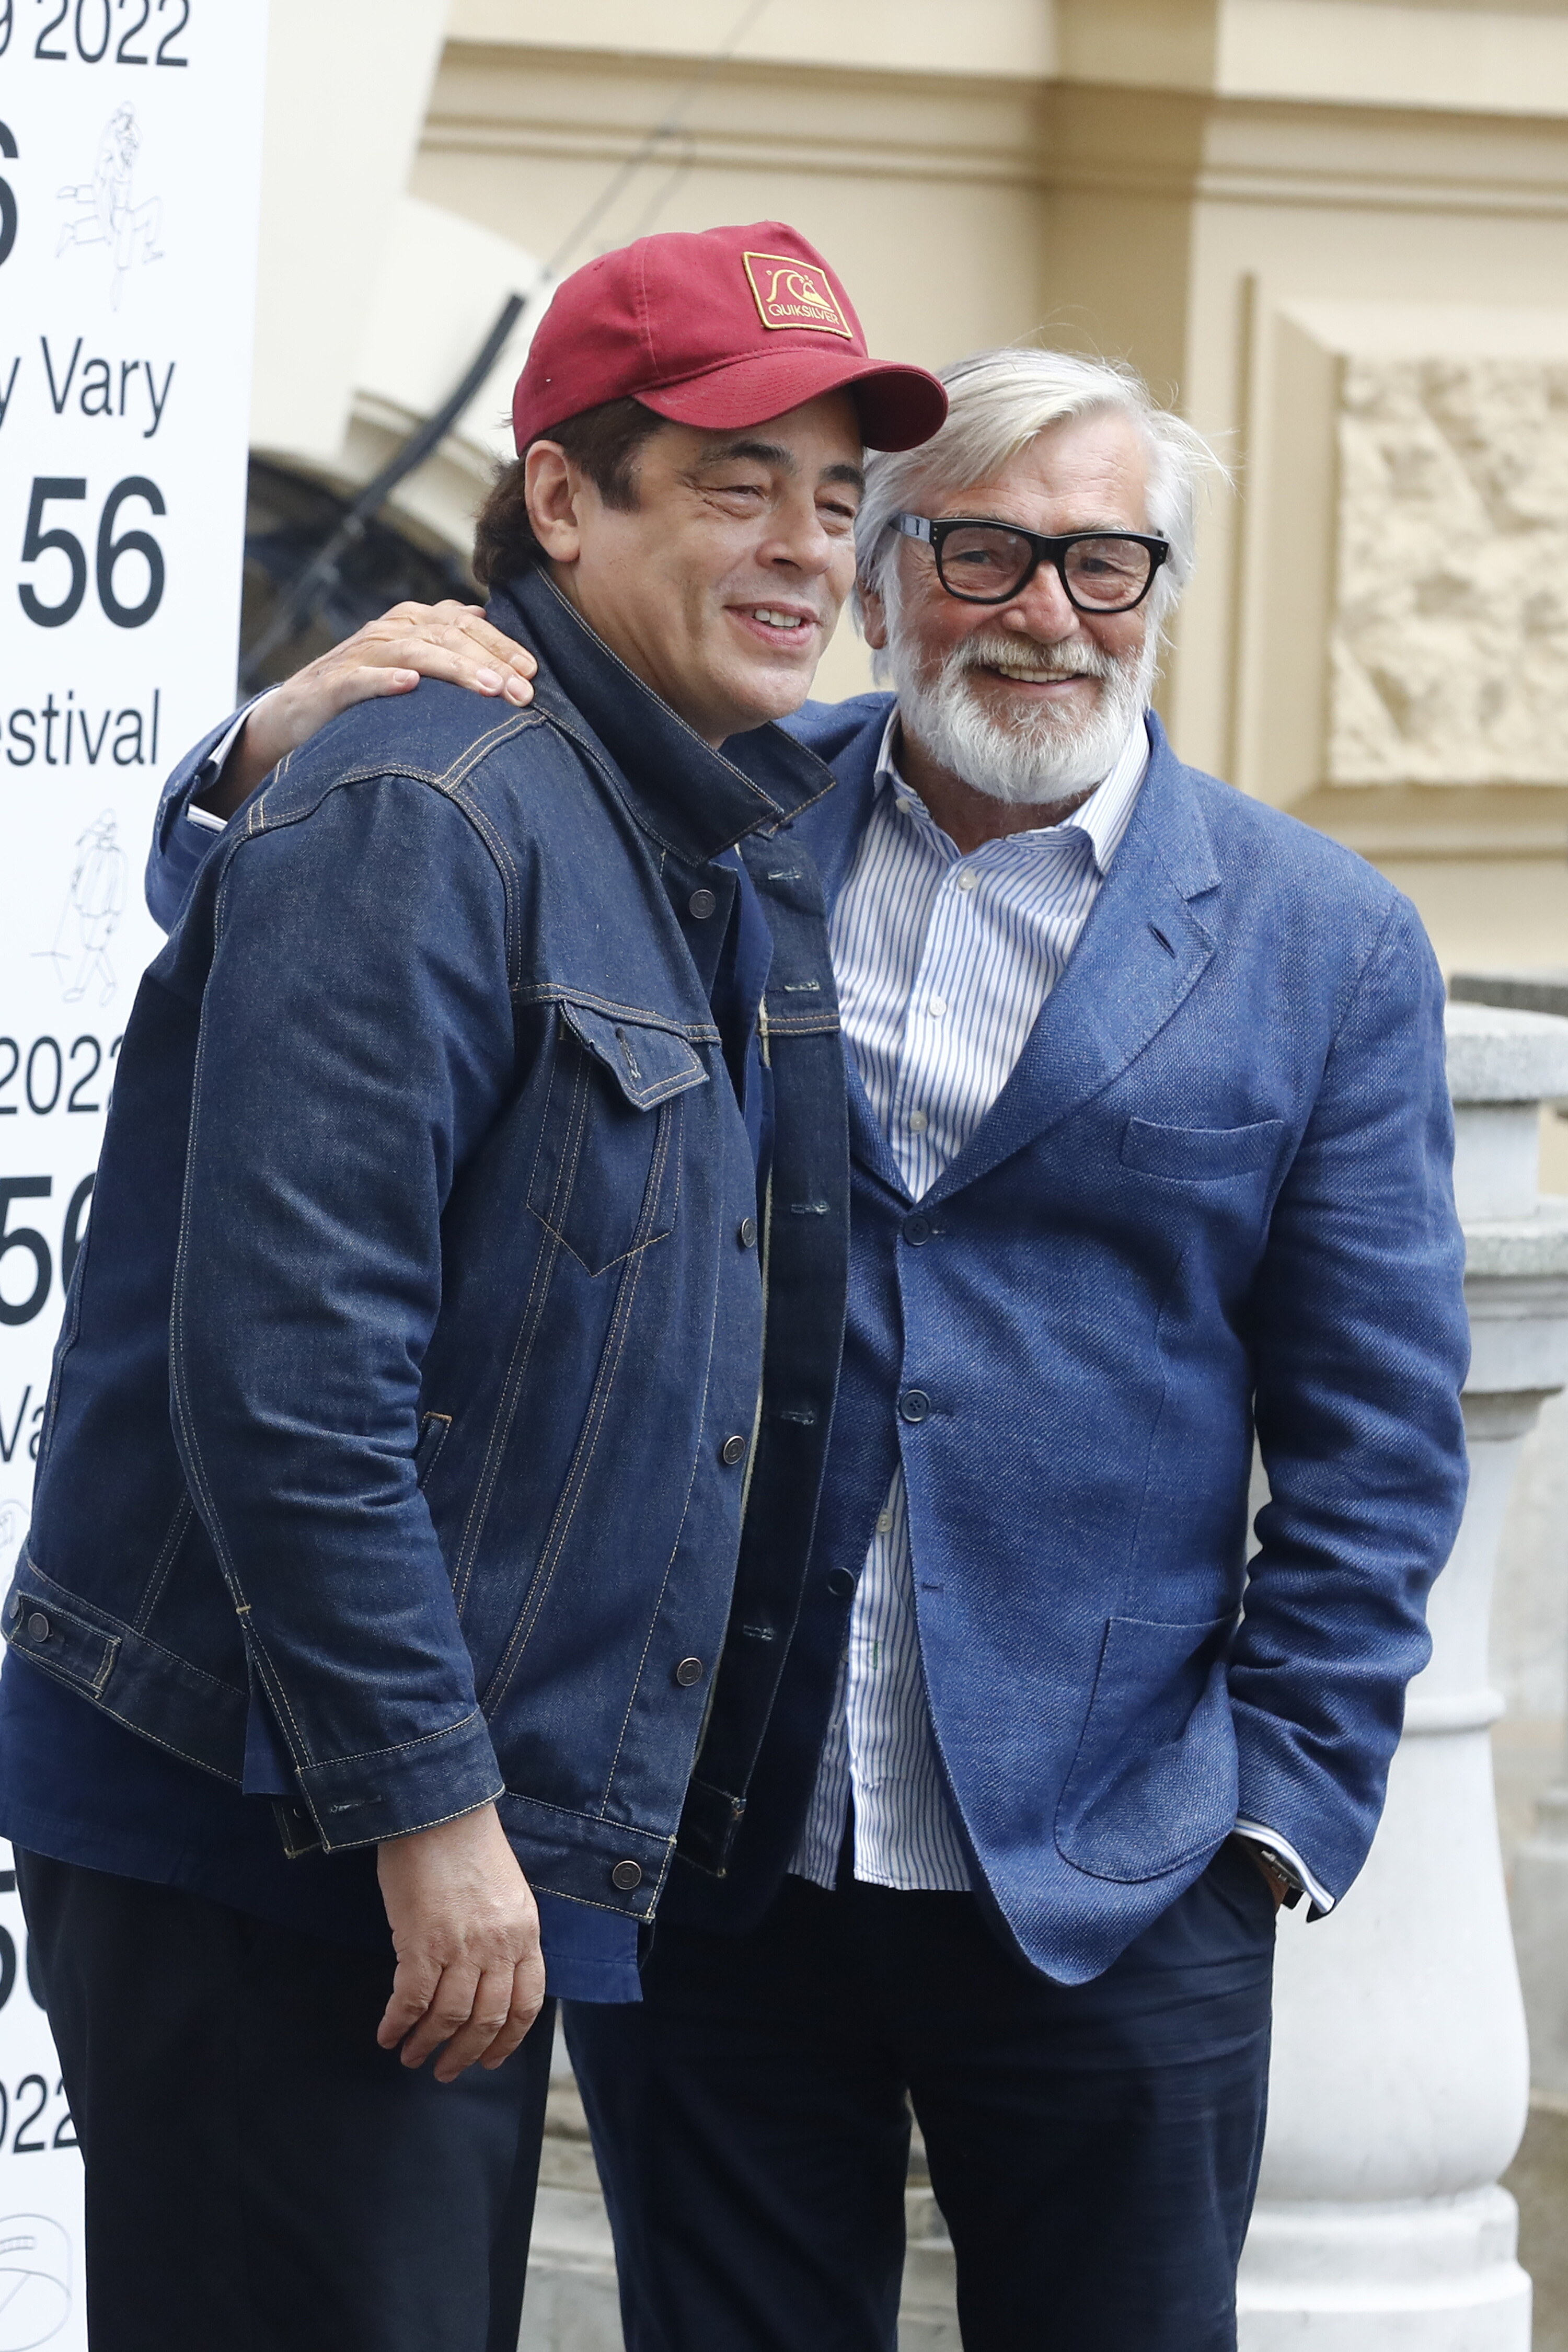 Držitel Oscara Benicio Del Toro dorazil do Varů.